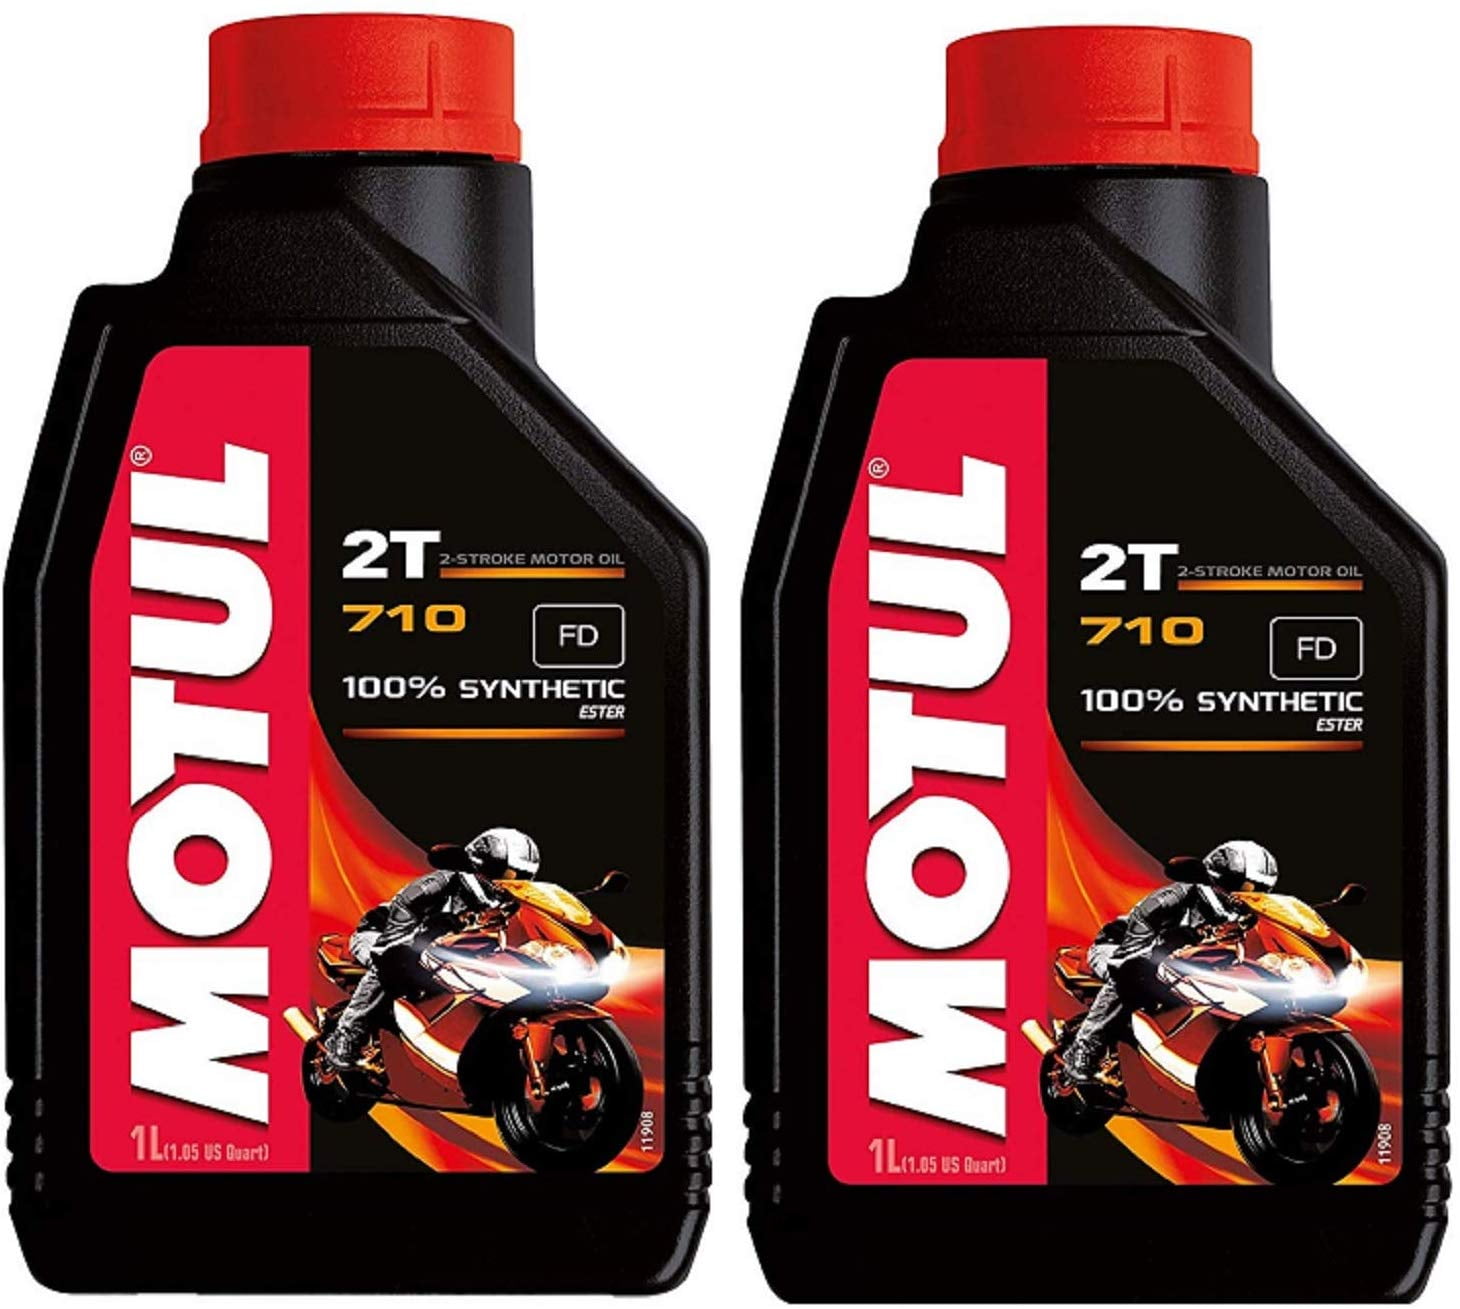 Motul 104034 Set of 2 710 2T Motor Oil 1-Liter Bottles